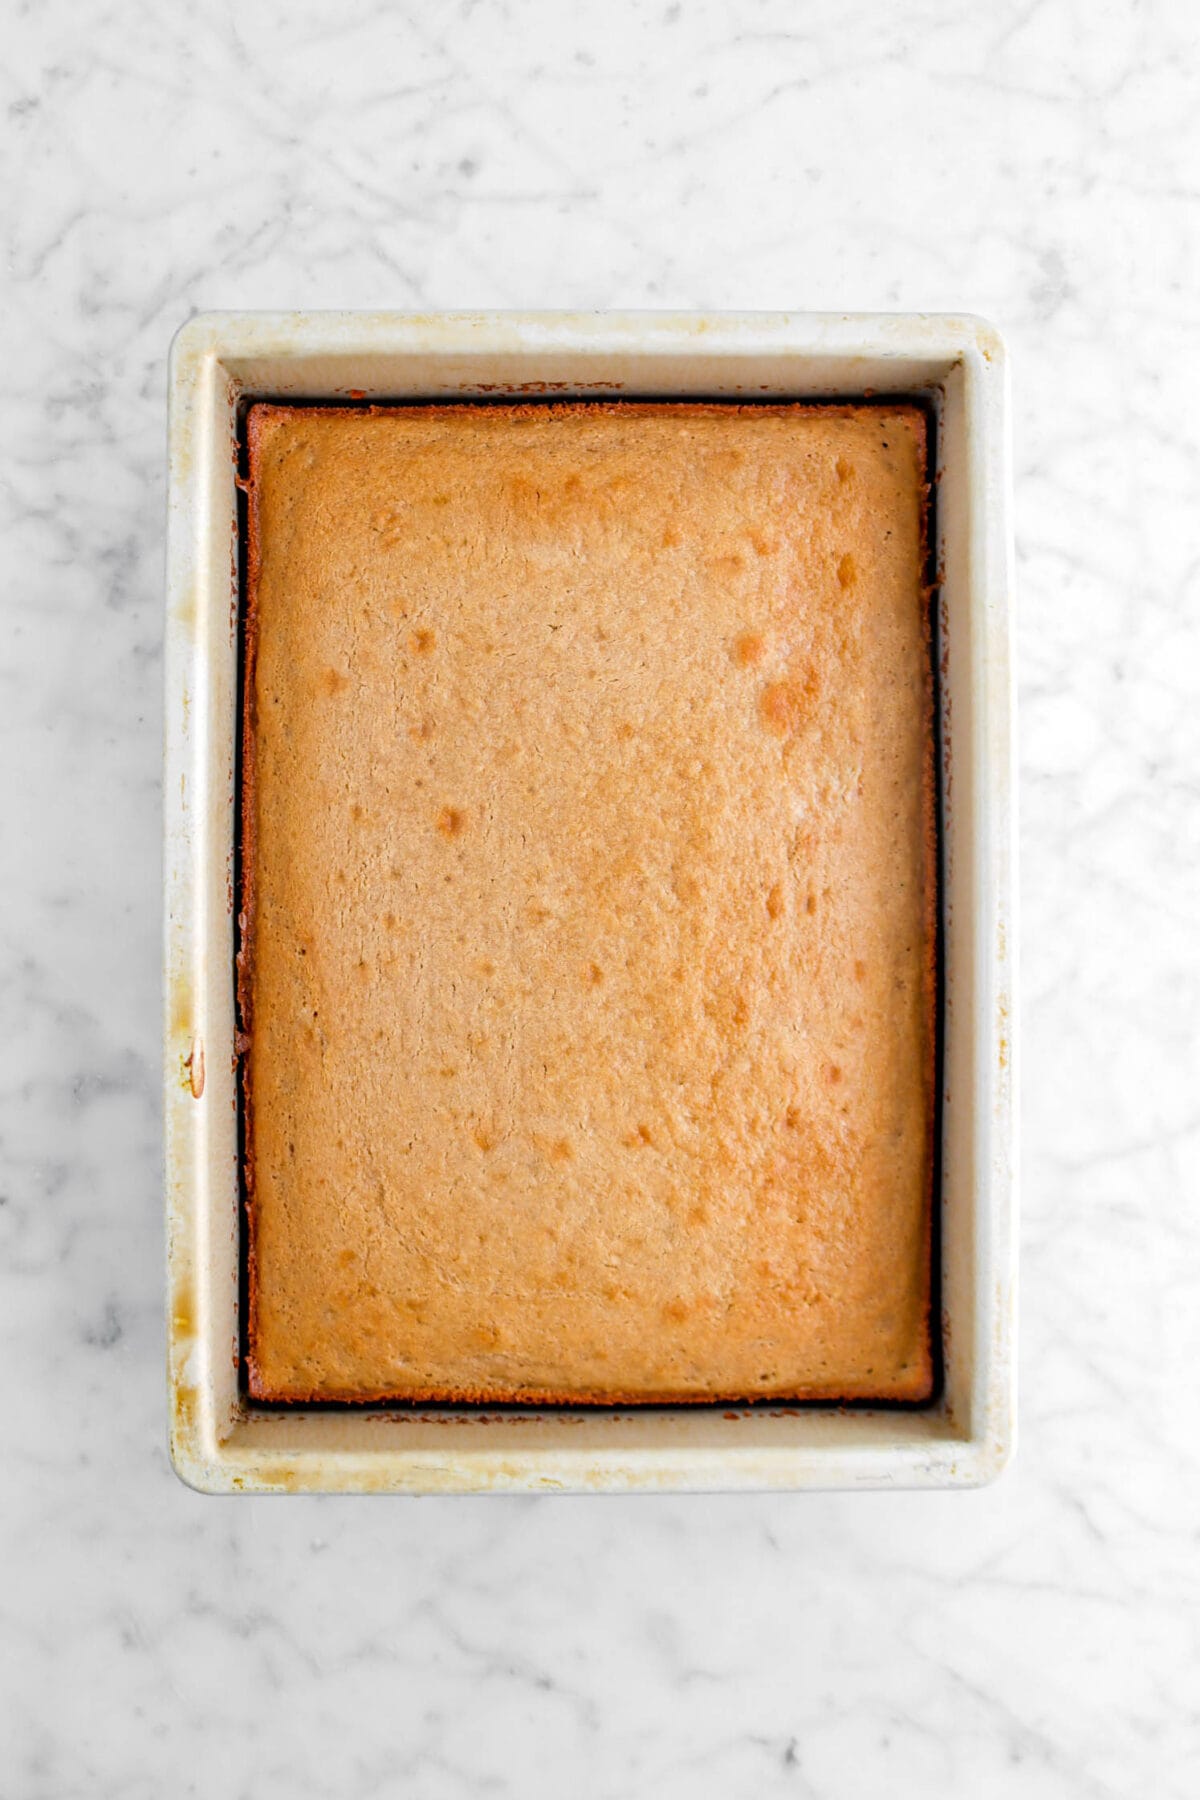 baked sheet cake on marble surface in rectangular pan